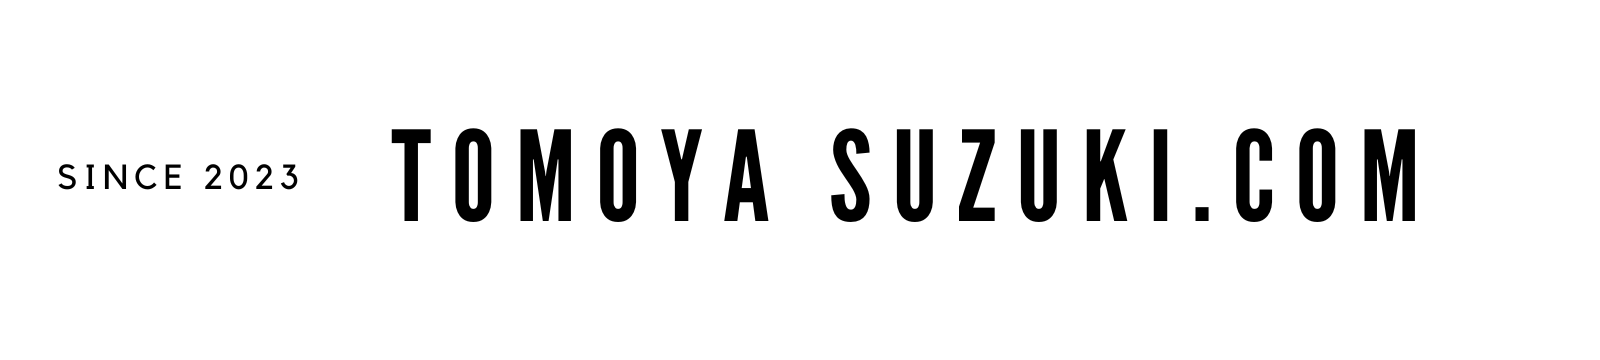 Tomoya-suzuki.com